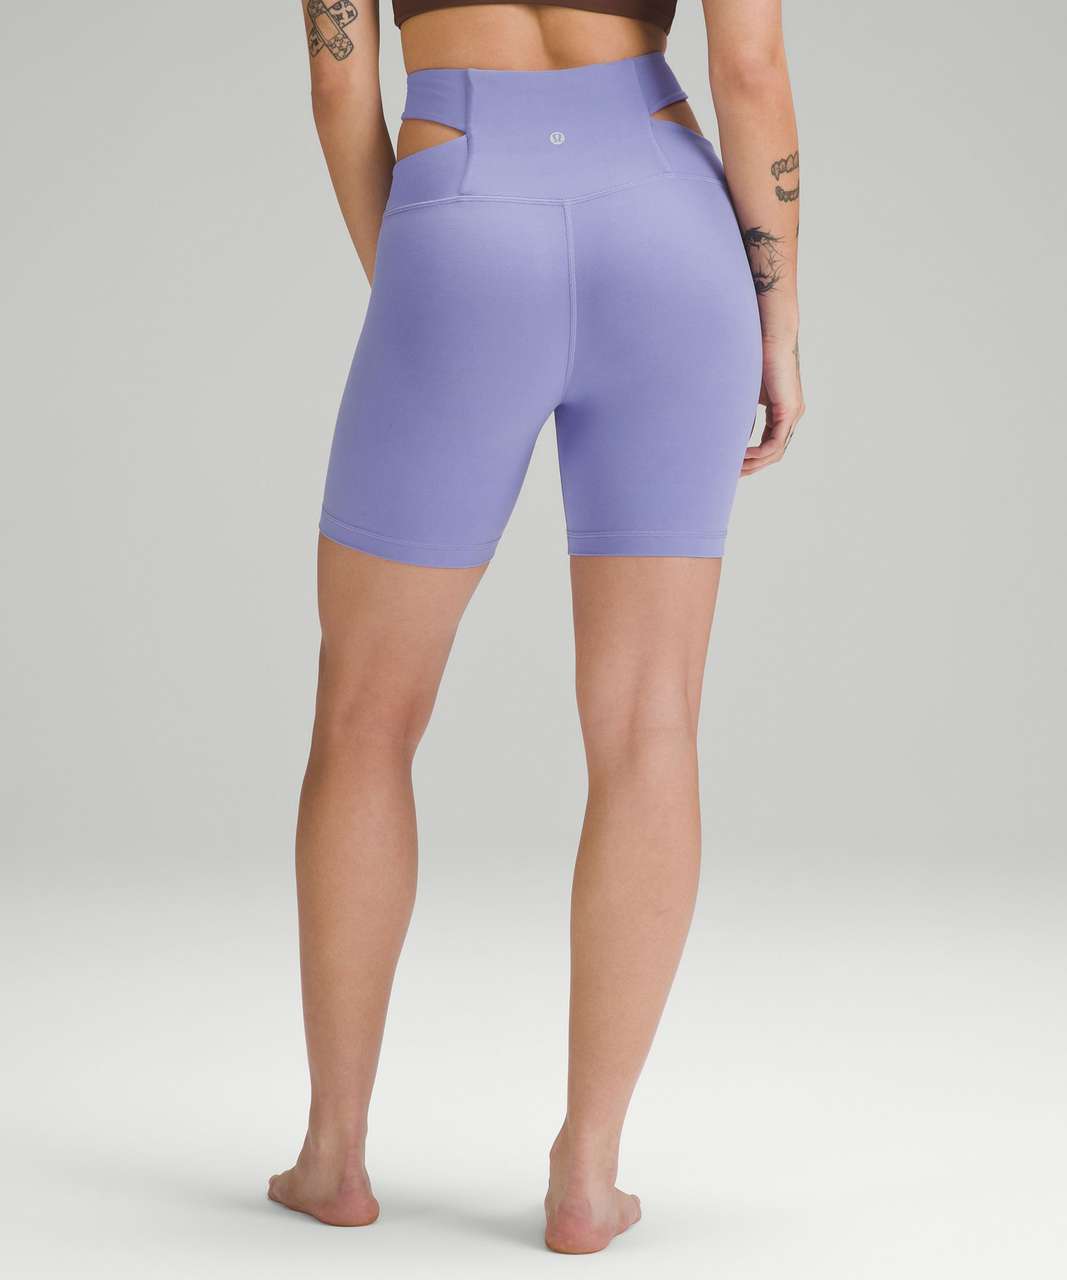 gym shorts BETTER than Lululemon align shorts! 👀🫢 #acti